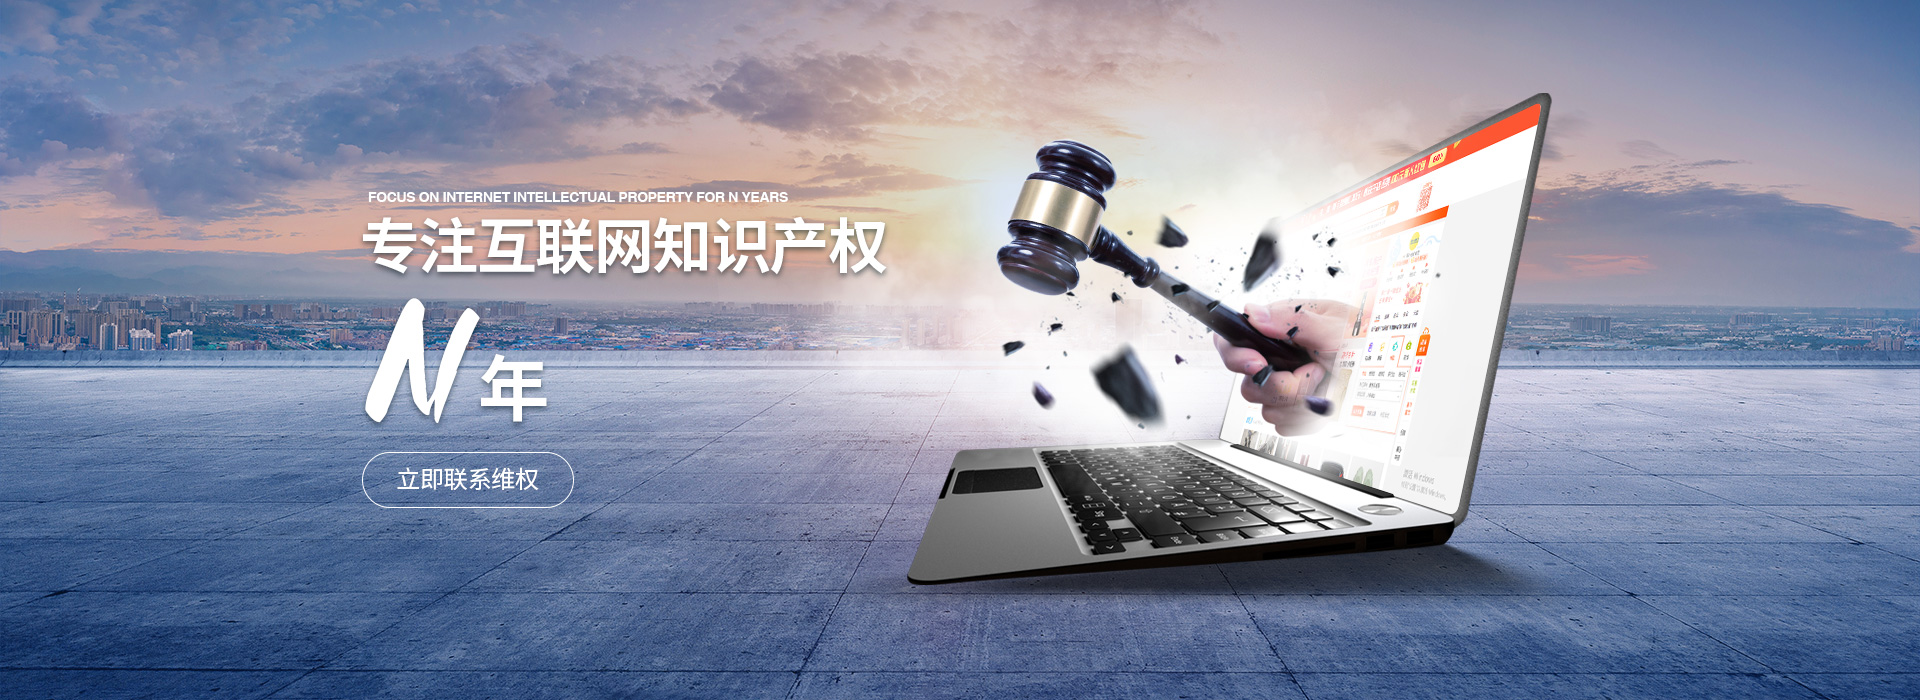 杭州专利侵权怎样取证 上海尚士华律师供应